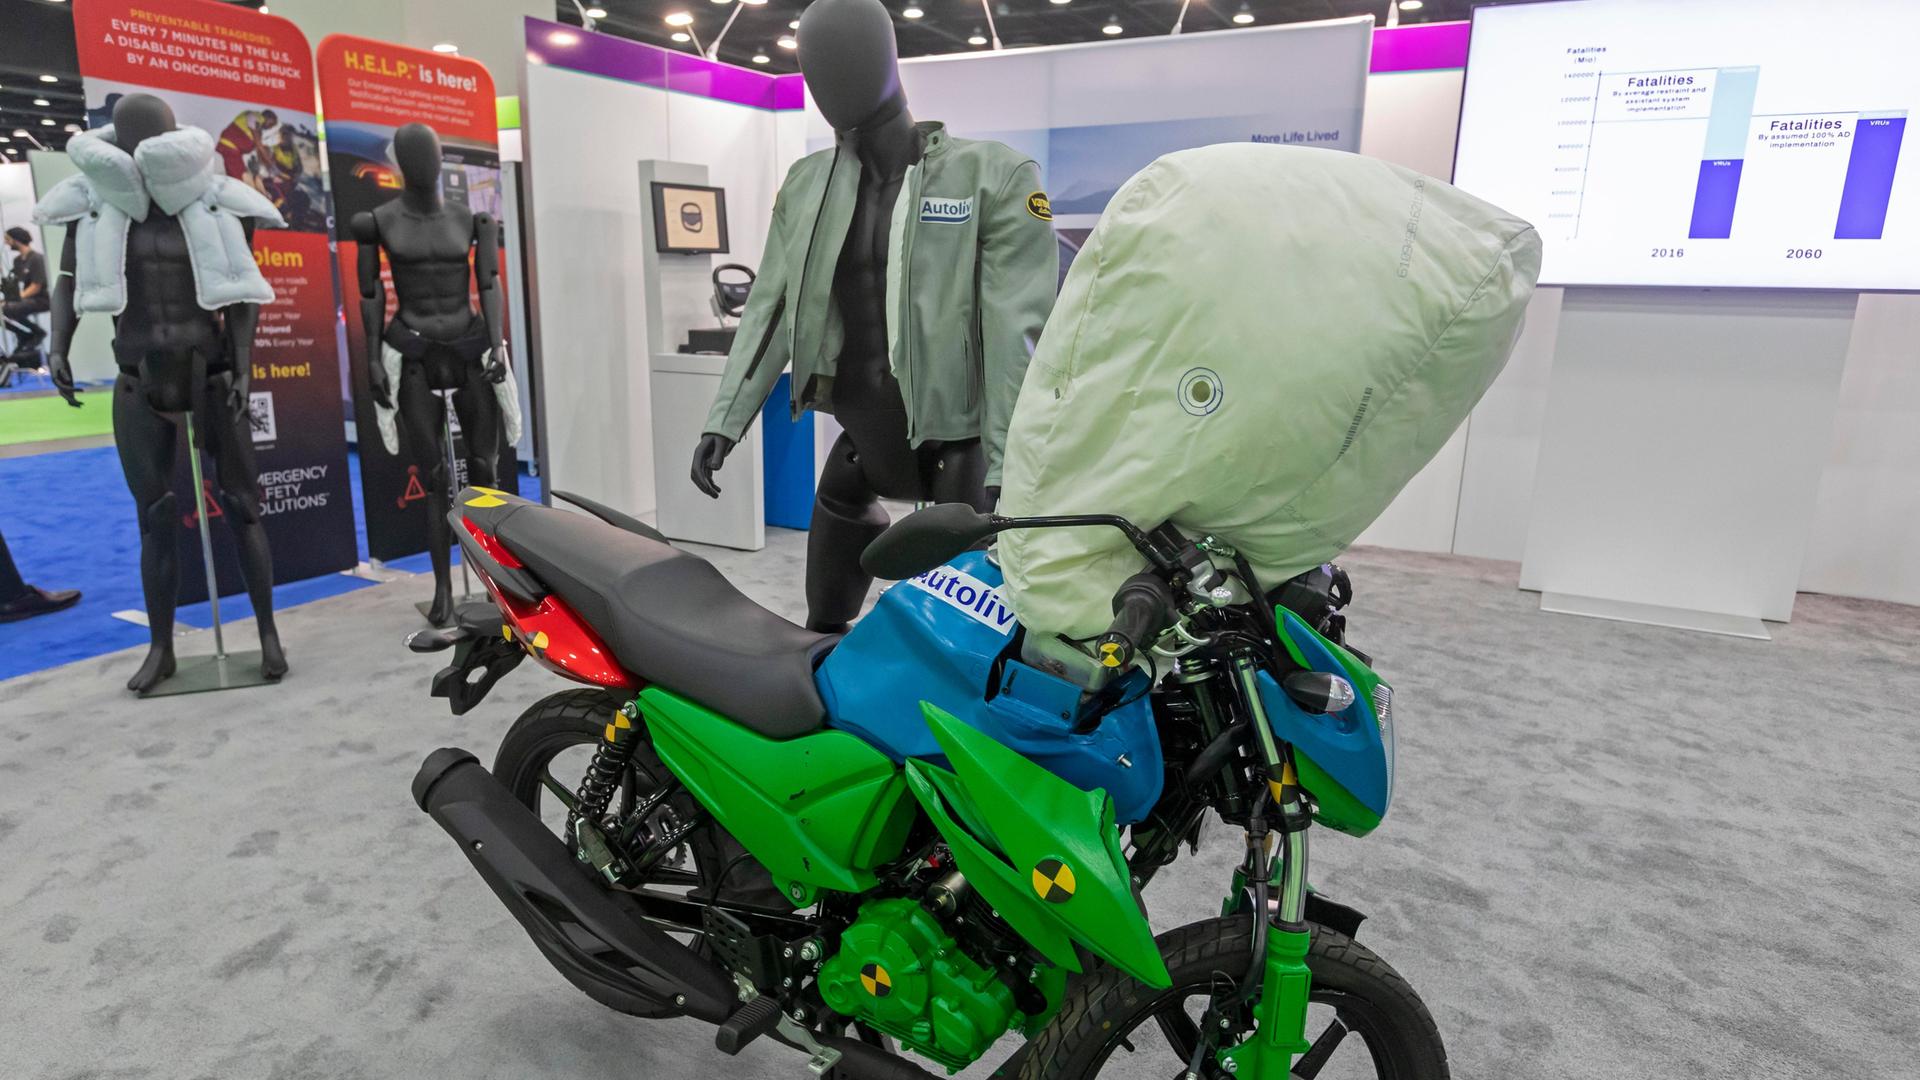 Motorrad mit einem aufgeblasenen Airbag auf dem Lenker